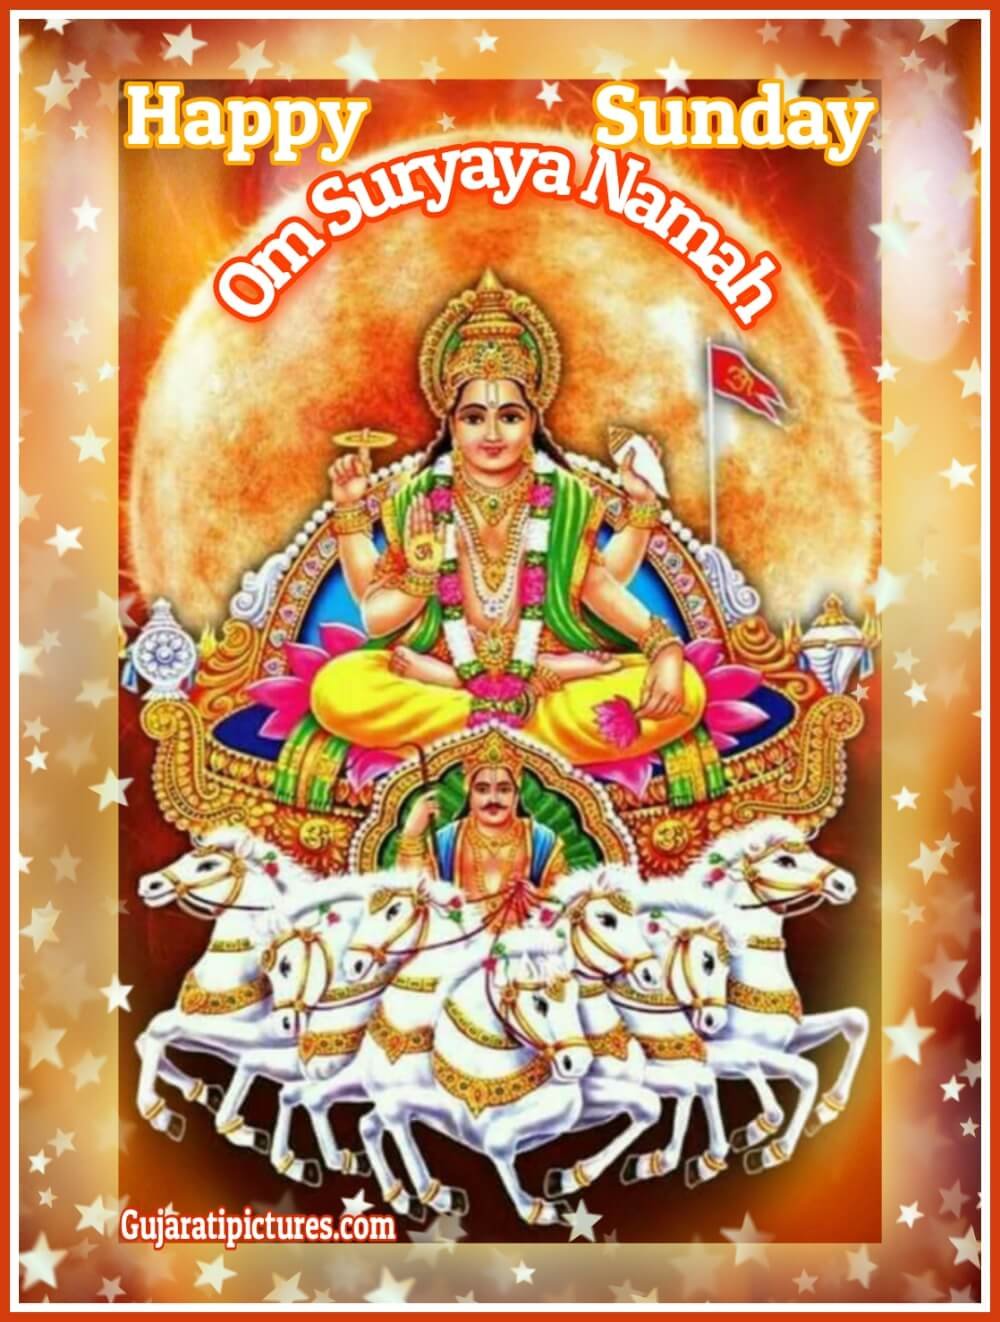 Om Suryaya Namah, Happy Sunday Image